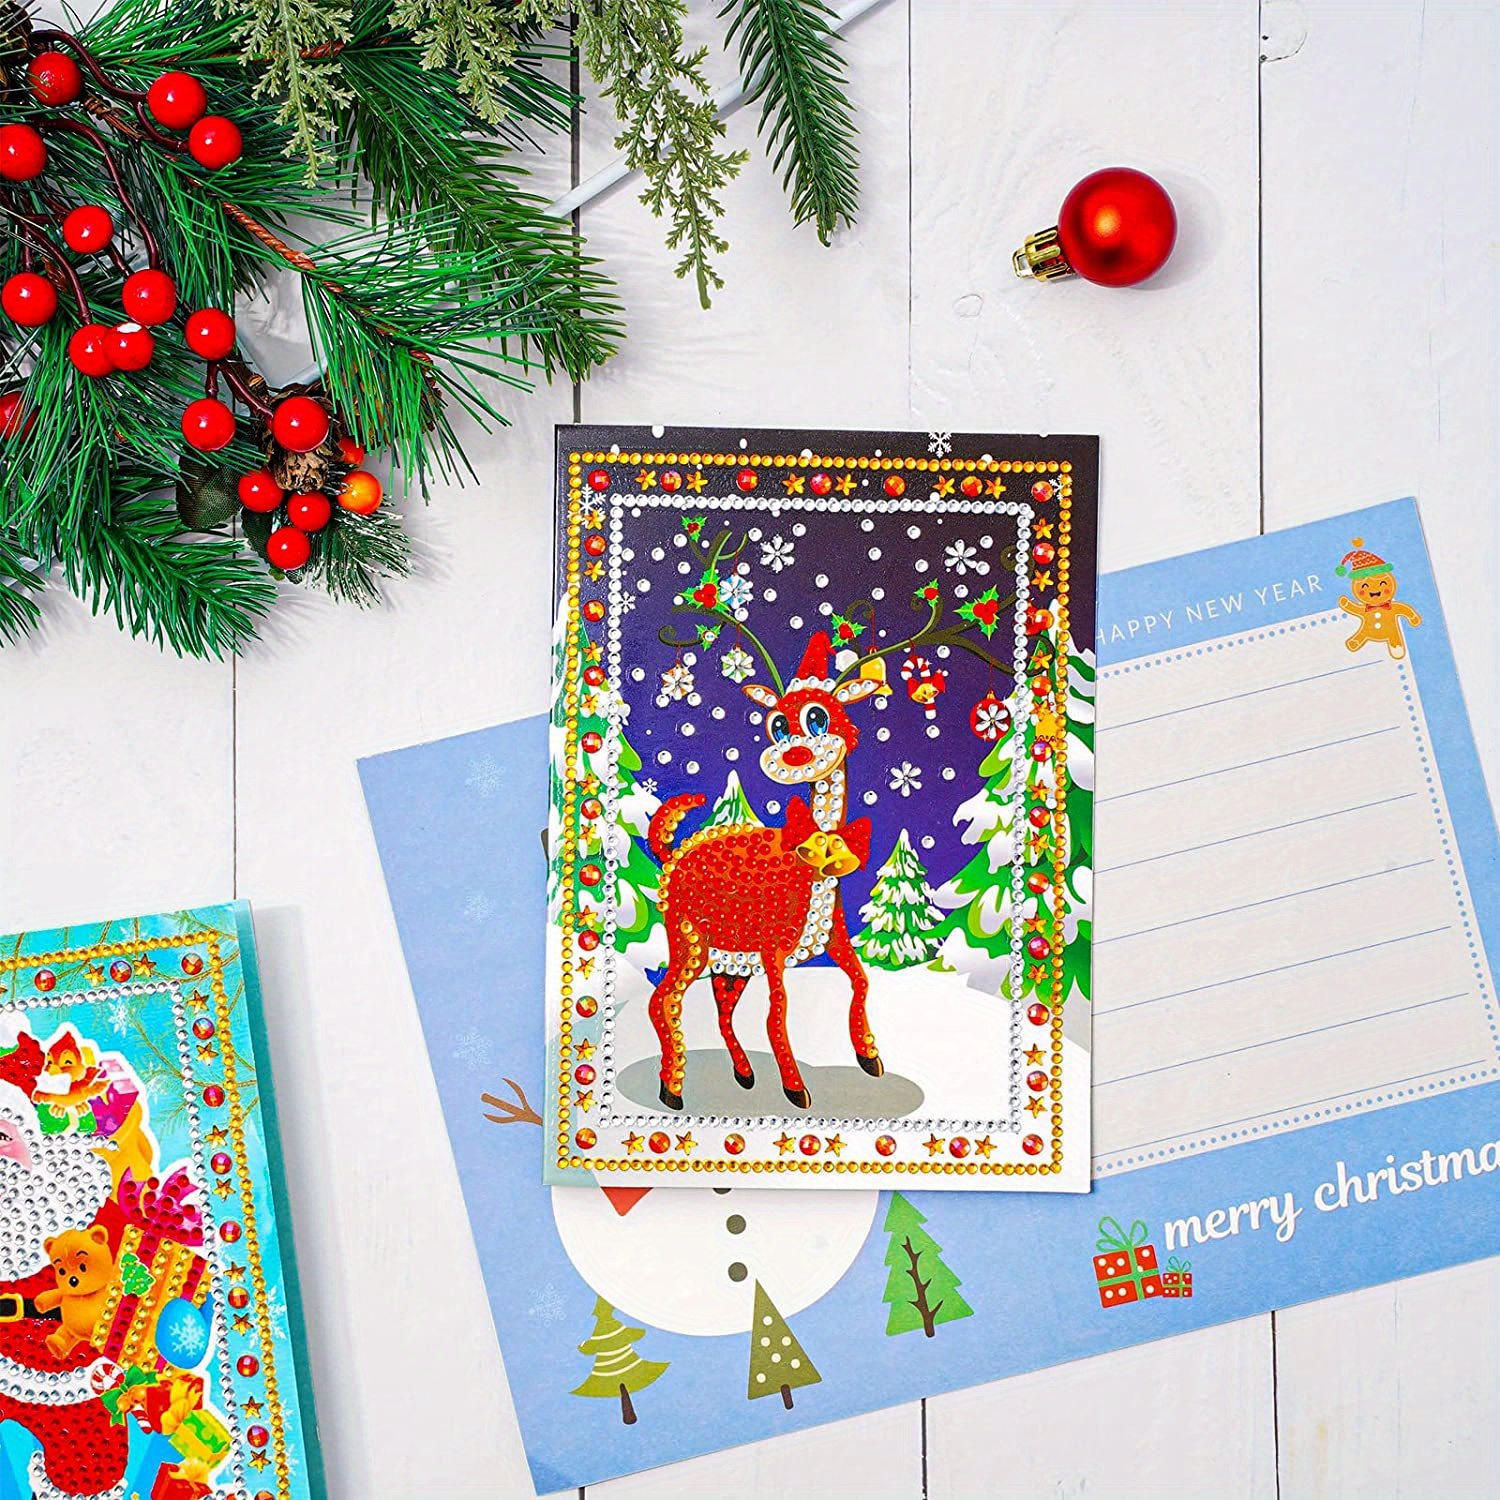 2019 creative diy special diamond painting greeting card Christmas